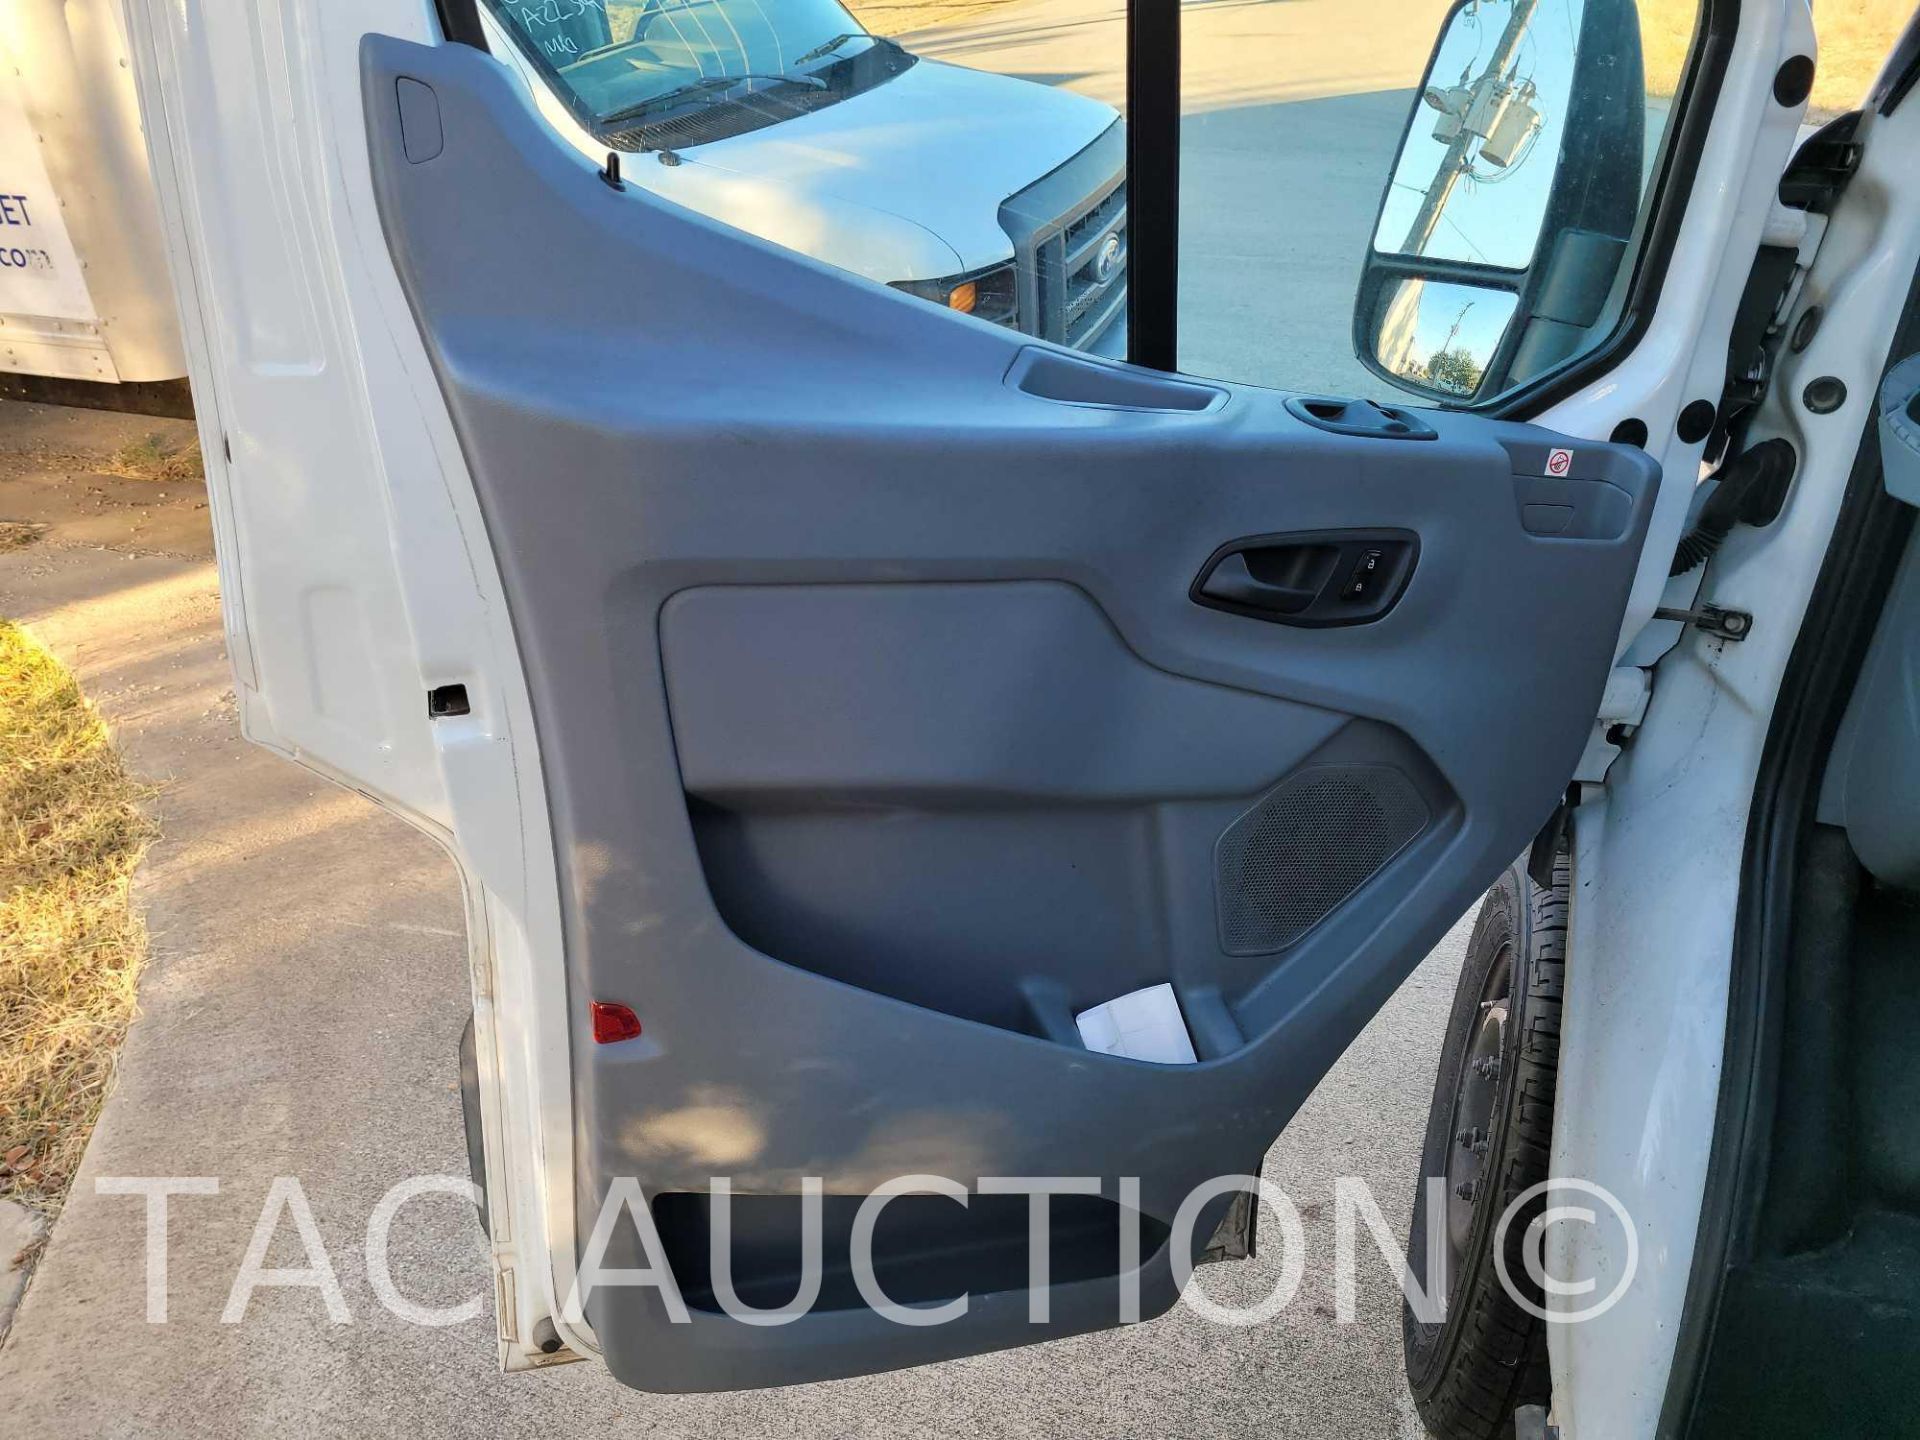 2019 Ford Transit 150 Cargo Van - Image 13 of 40